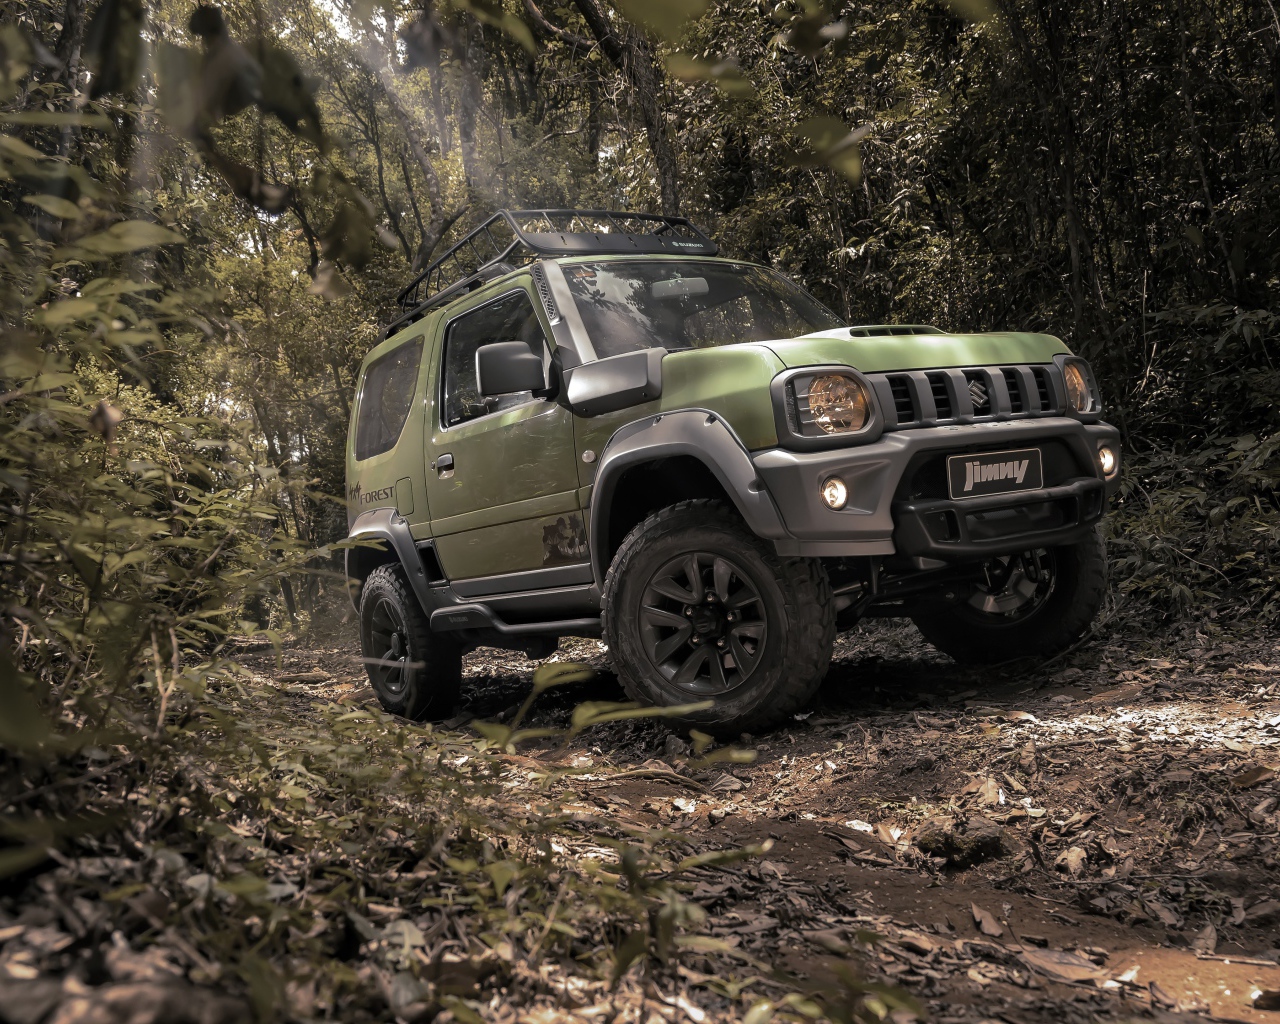 Внедорожник Suzuki Jimny Forest 2020 года едет в лесу